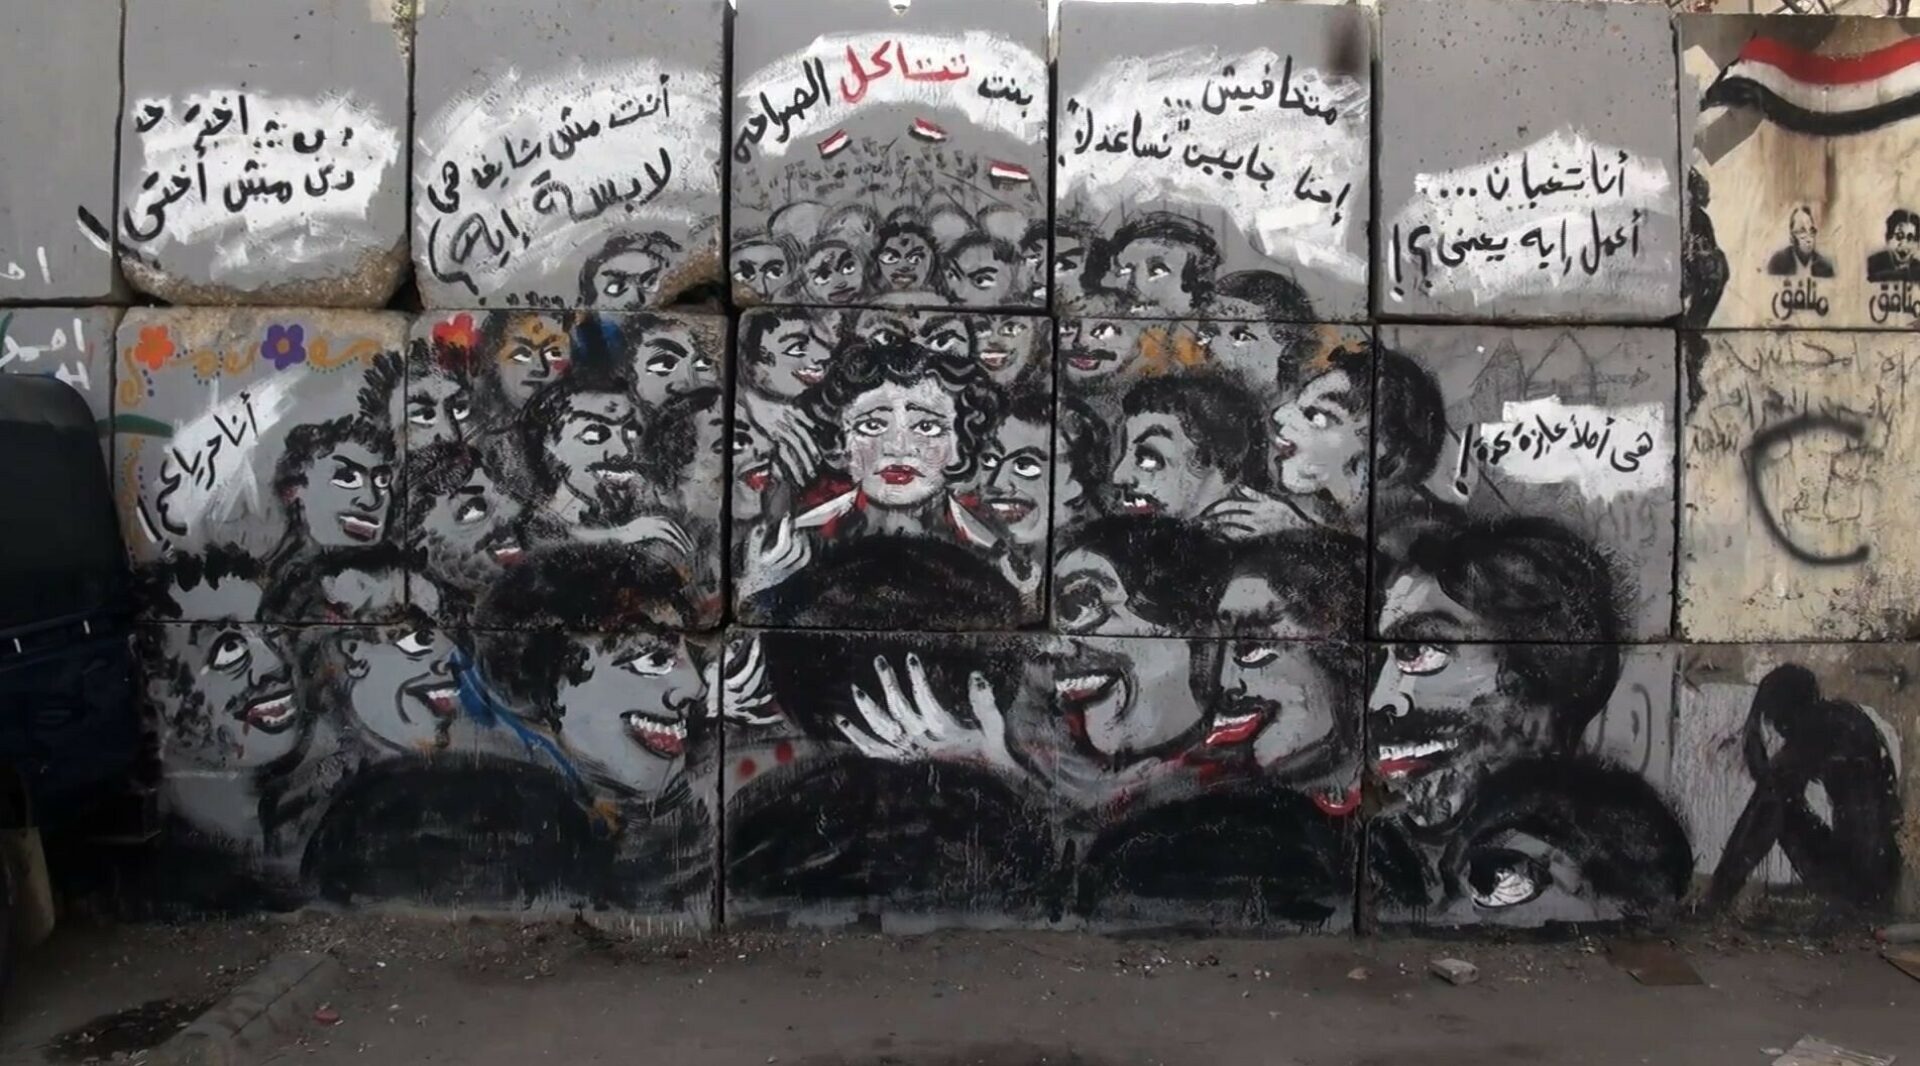 رسمة جدارية ضد التحرش الجنسي – القاهرة – مصر.  Graffiti art by Mira Shihadeh